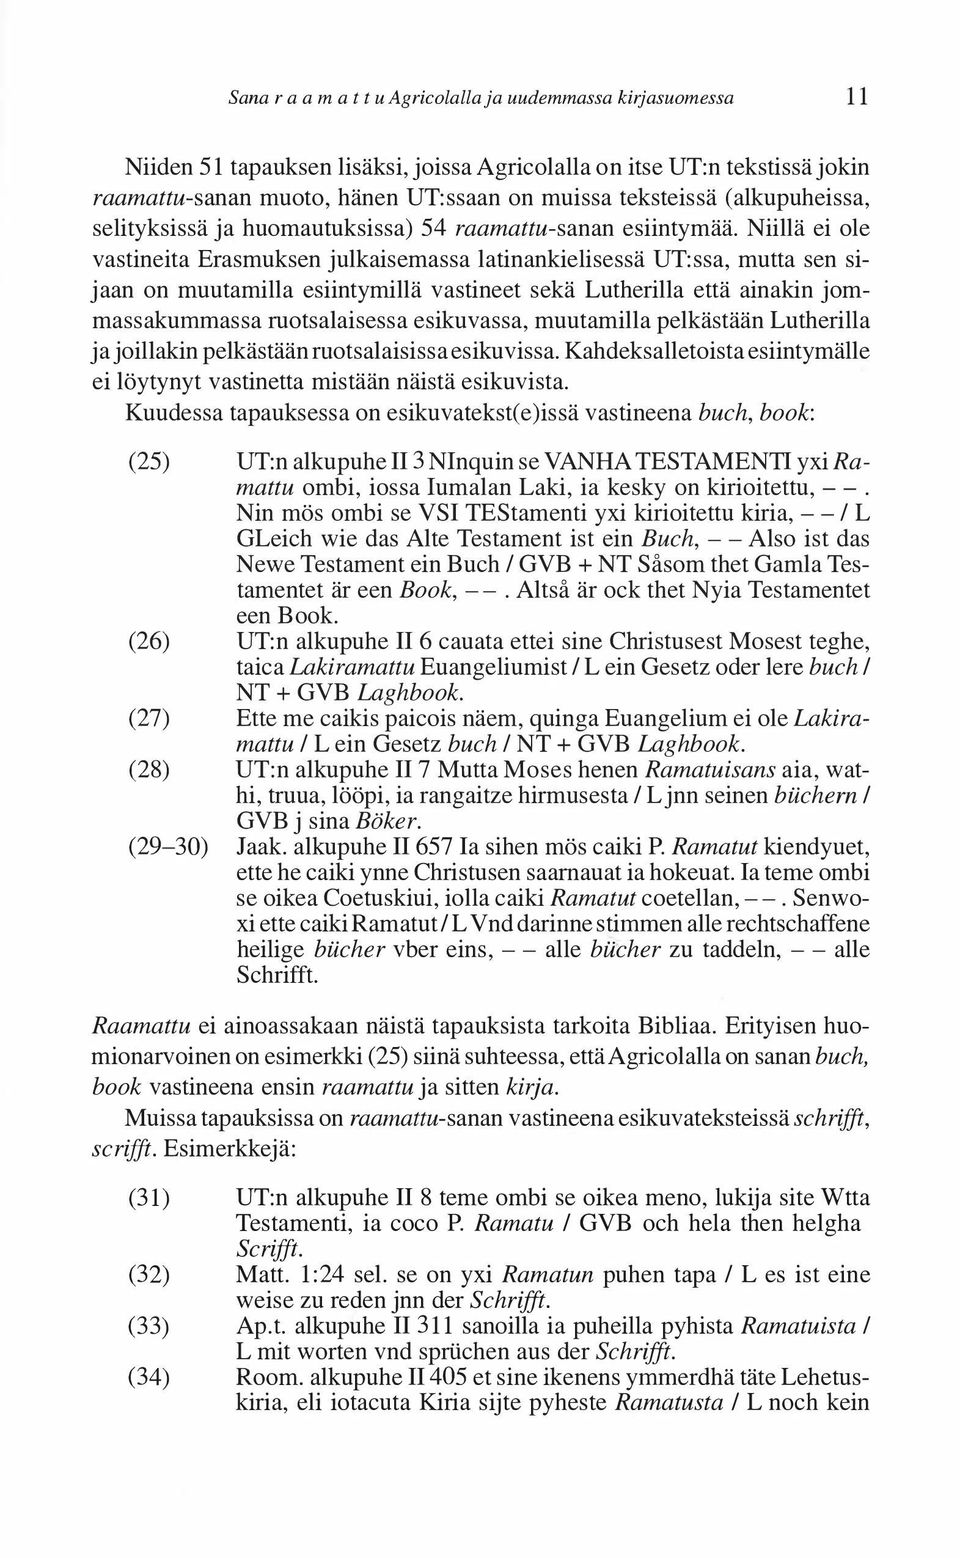 Niillä ei ole vastineita Erasmuksen julkaisemassa latinankielisessä UT:ssa, mutta sen sijaan on muutamilla esiintymillä vastineet sekä Lutherilla että ainakin jommassakumrnassa ruotsalaisessa